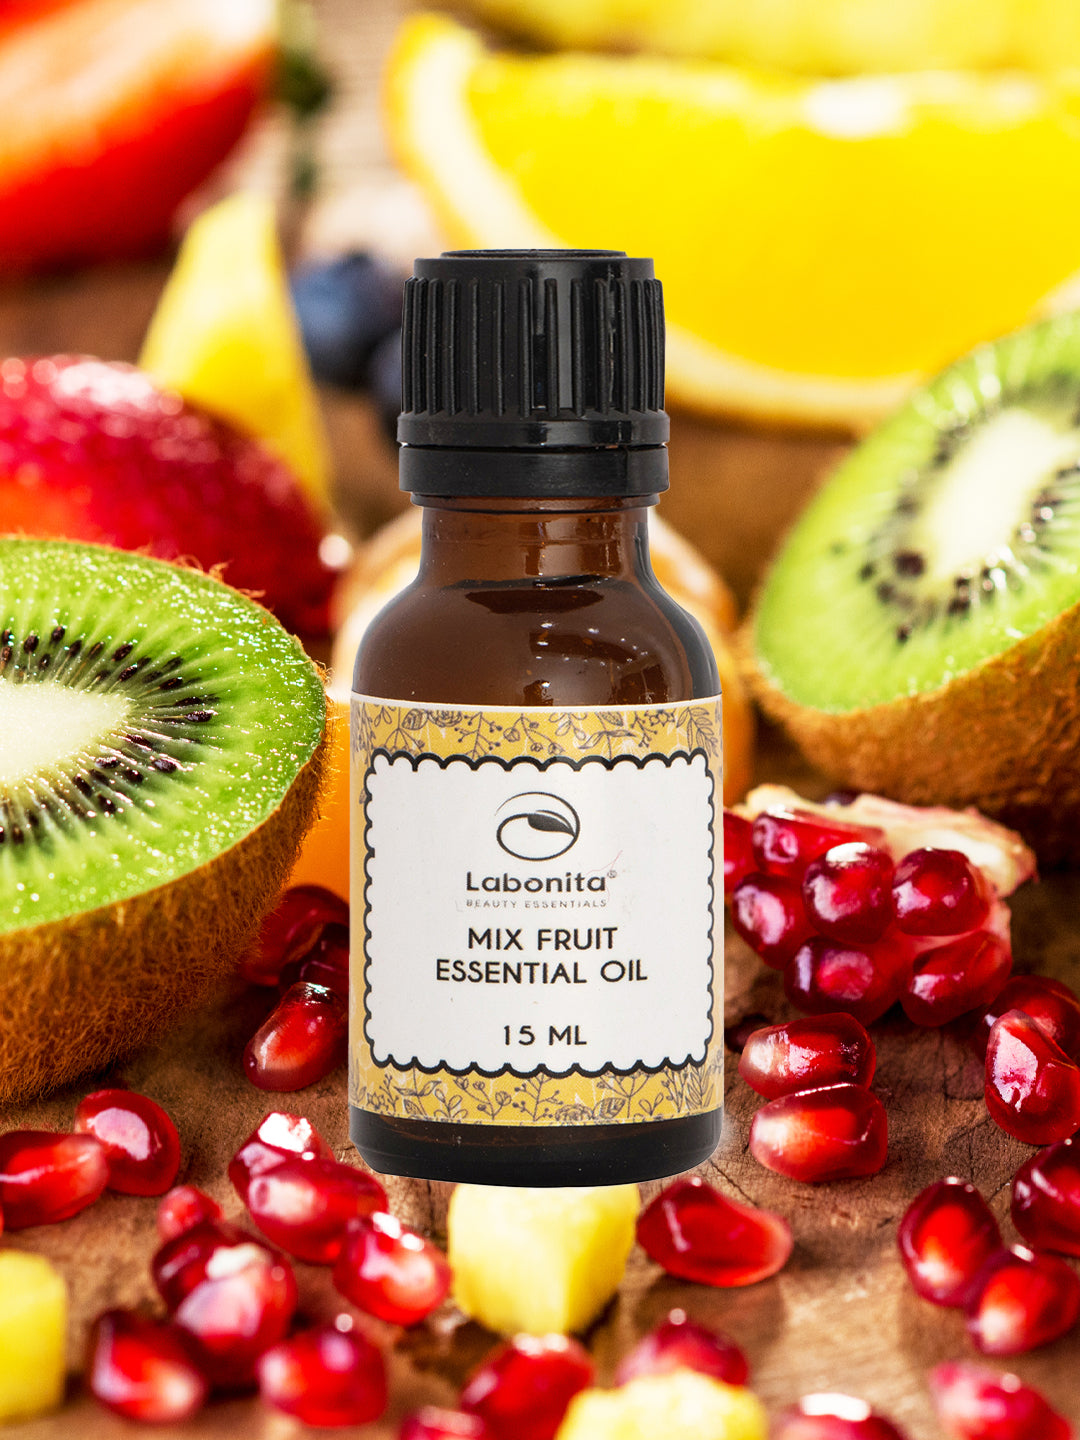 Mix Fruit Essential Oil